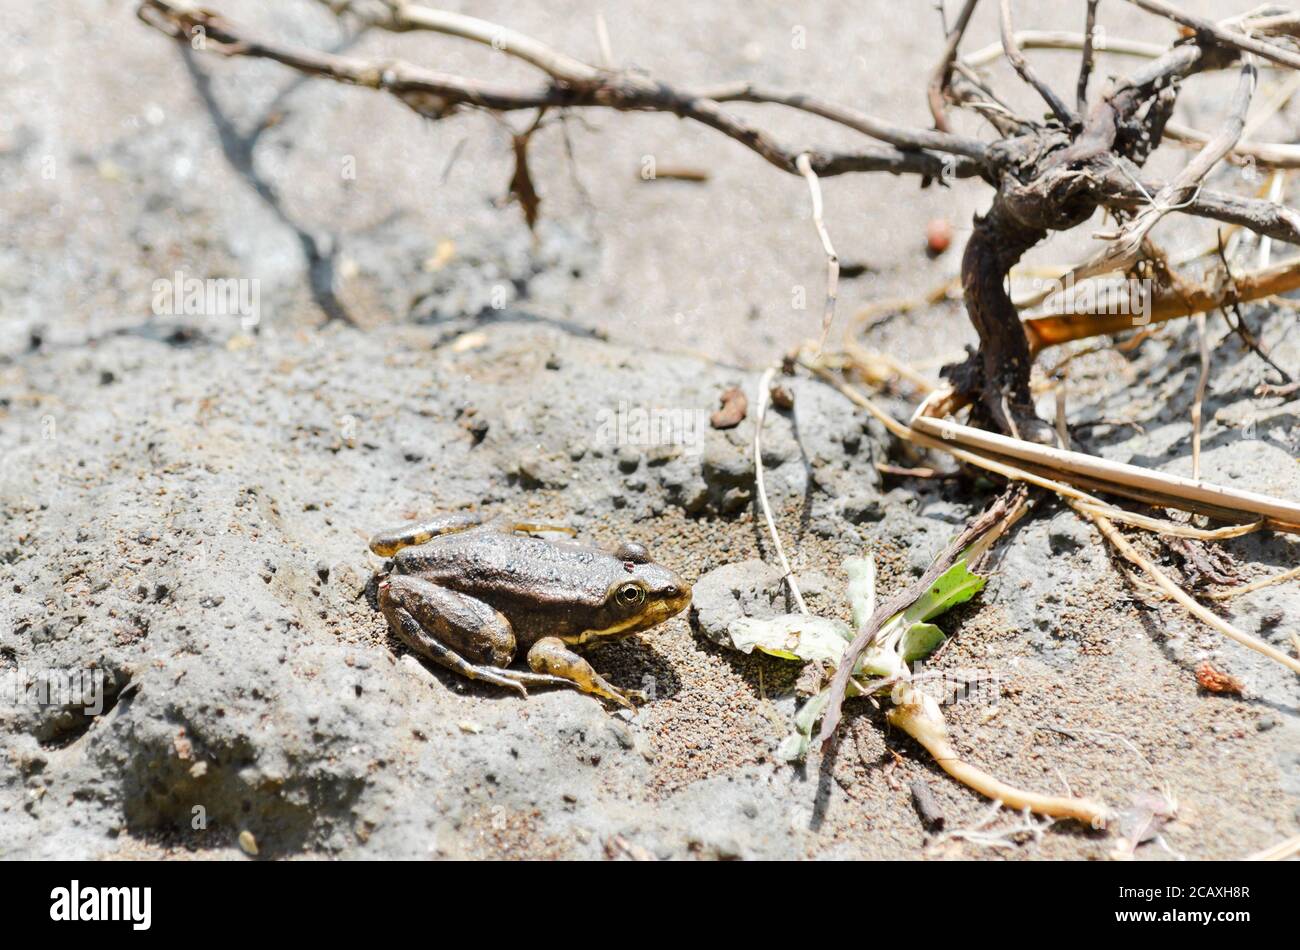 Une petite grenouille jaune-marron est posée sur le sable humide lors d'une Sunny day. Objectif électoral Banque D'Images